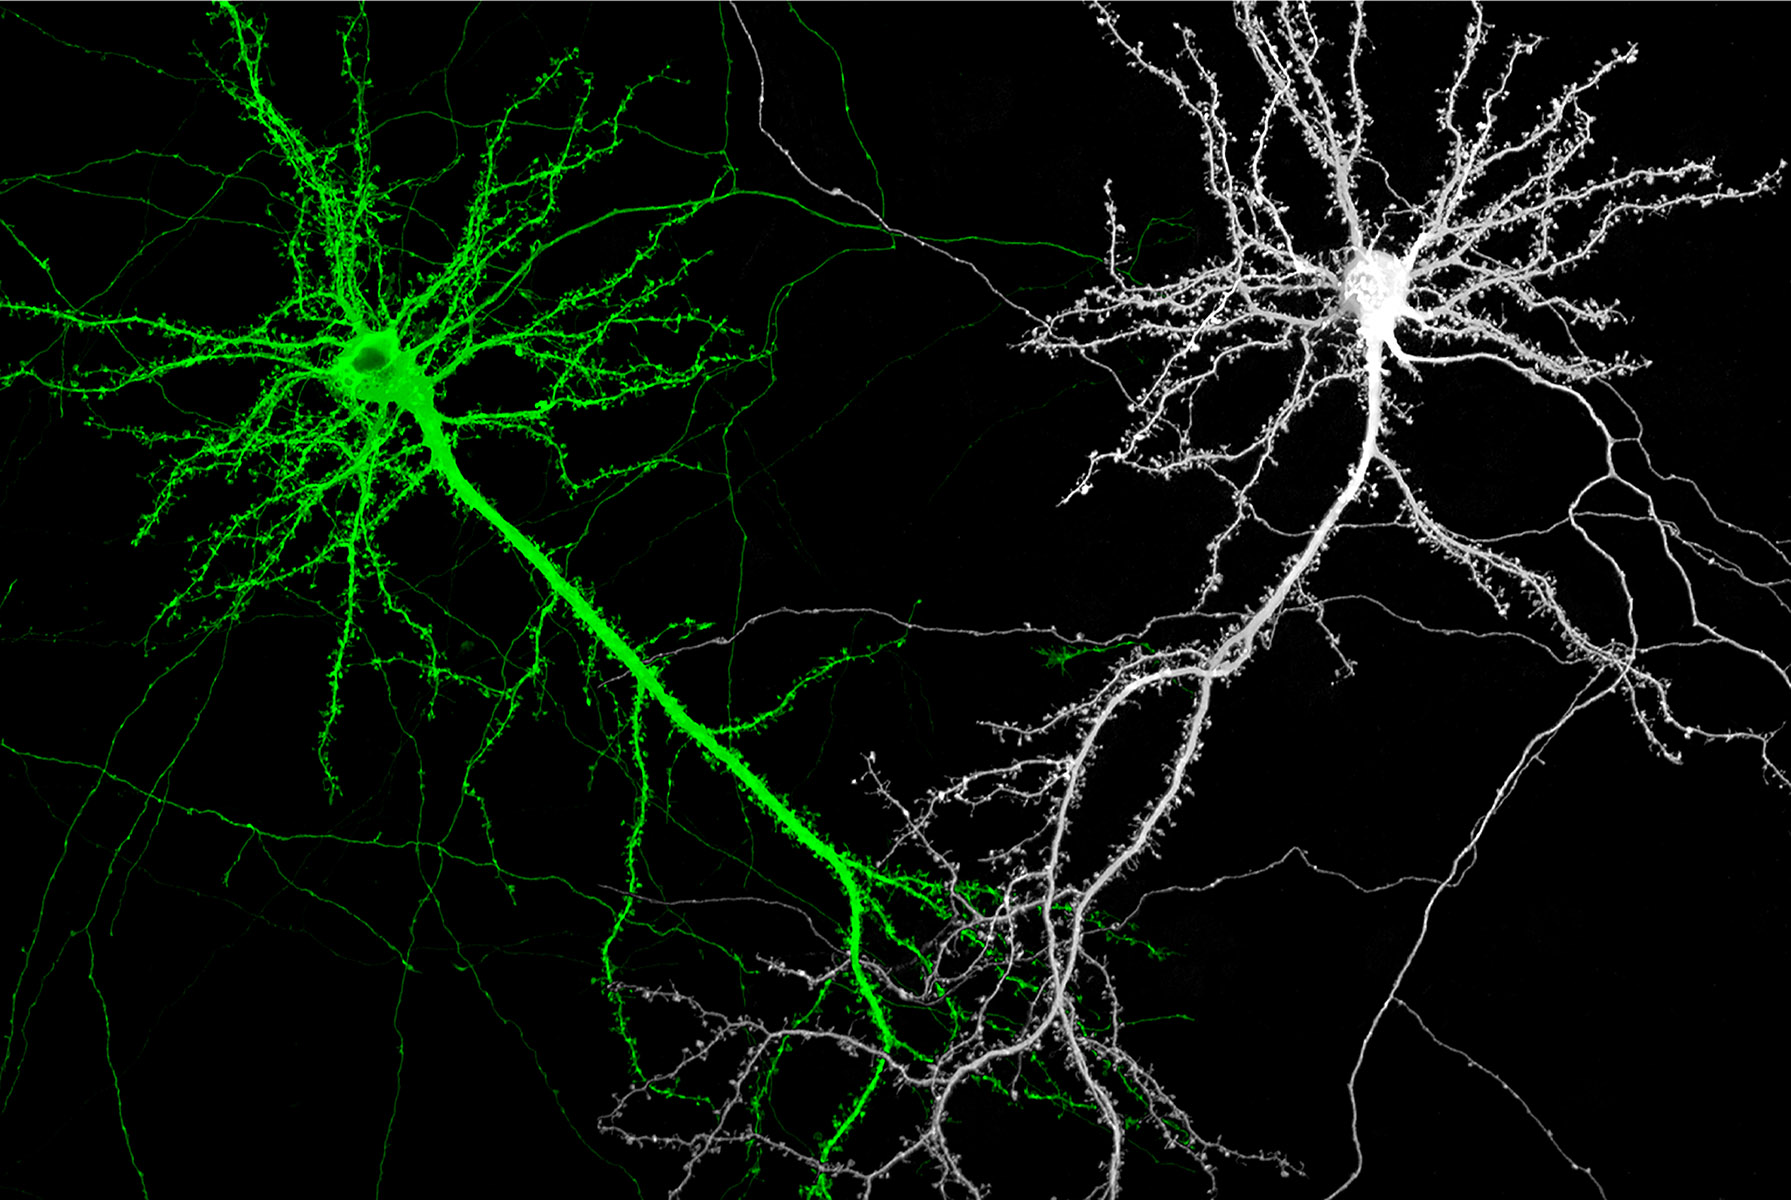 細數神經細胞的突觸點點